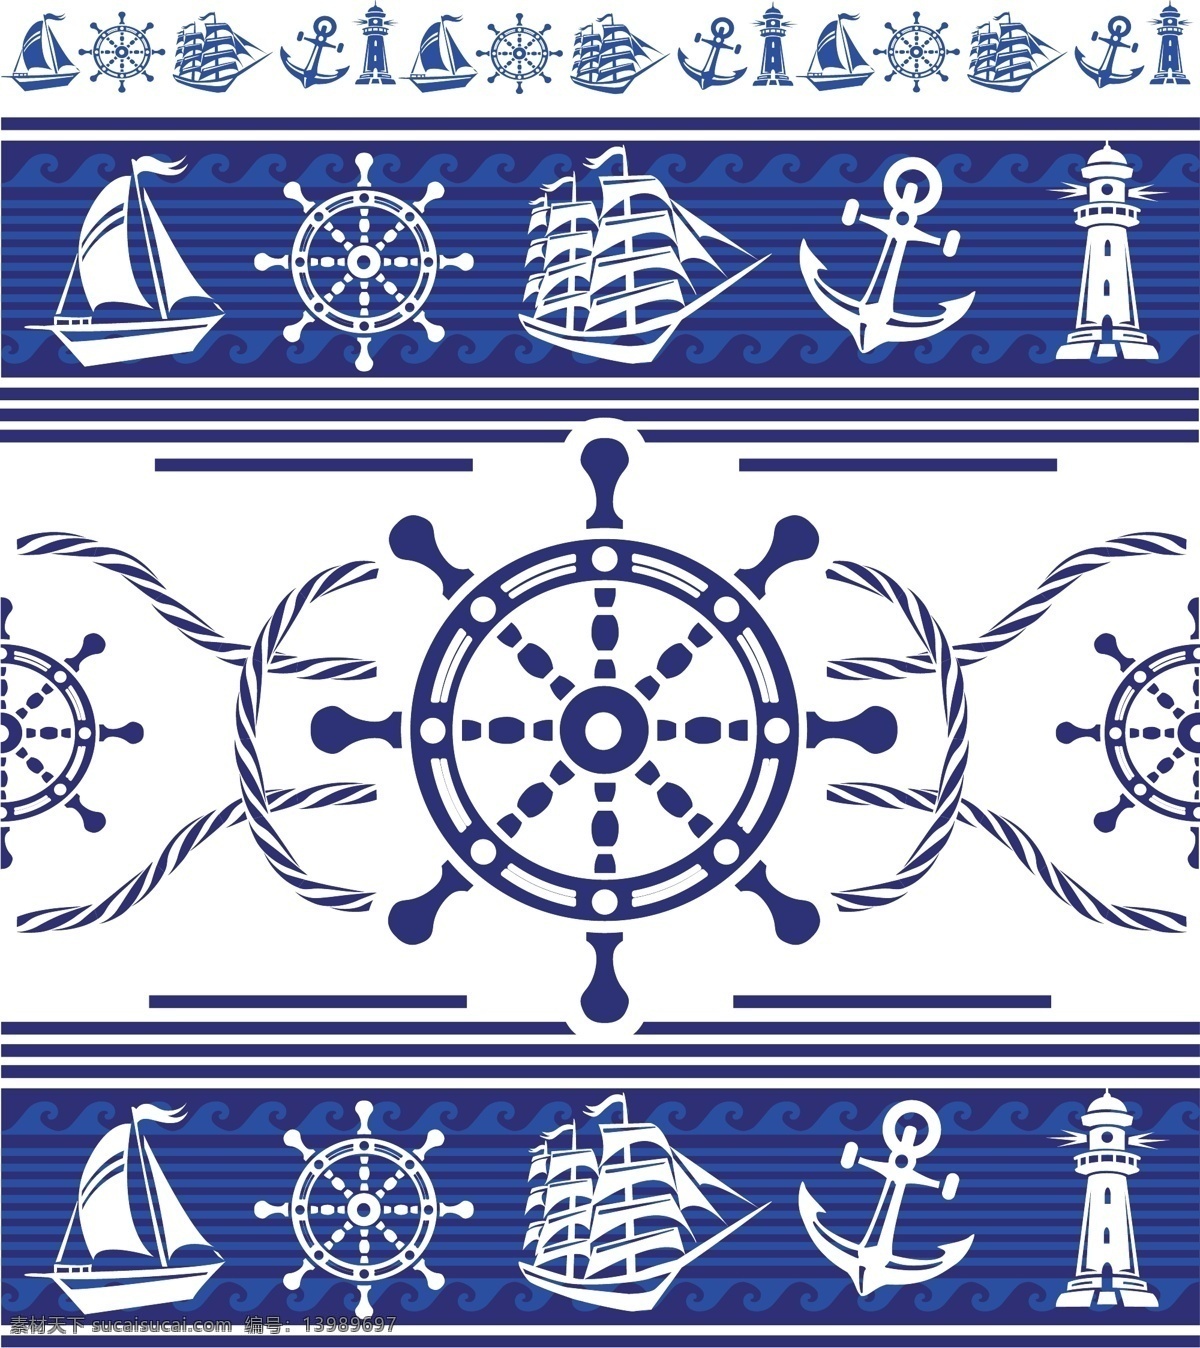 船驼 船锚 航海母舰 励志海报 文化栏 灯塔 帆船 矢量 矢量素材 矢量航海素材